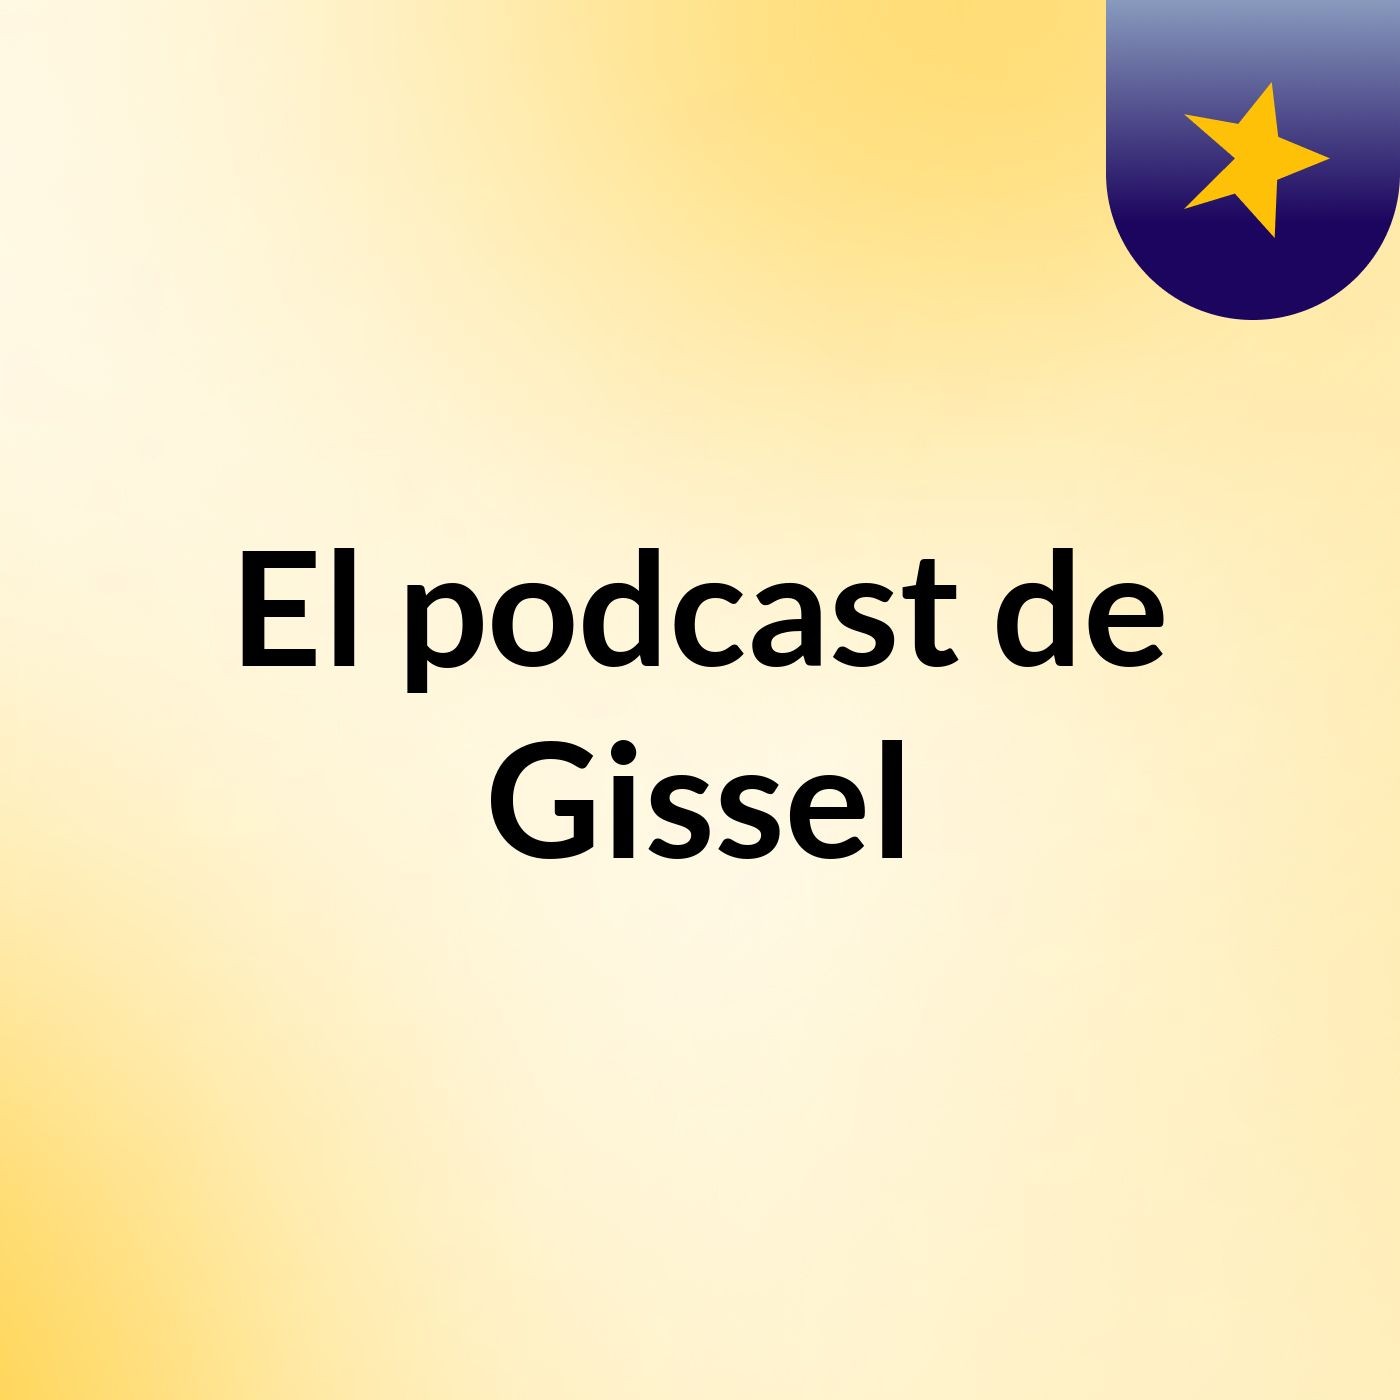 El podcast de Gissel